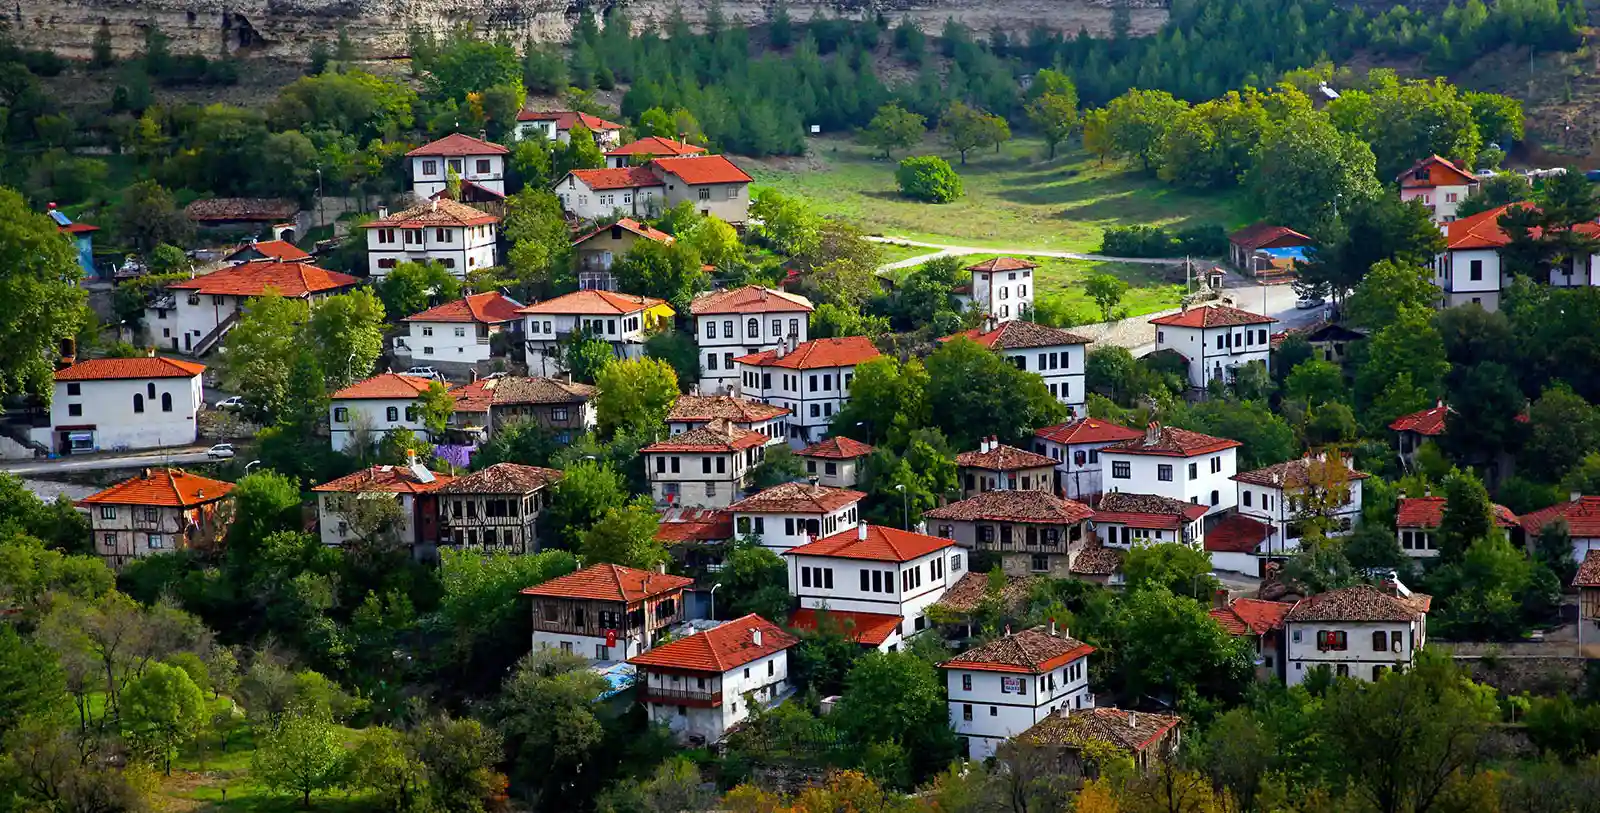 Safranbolu – Karabük is a heritage in Turkey